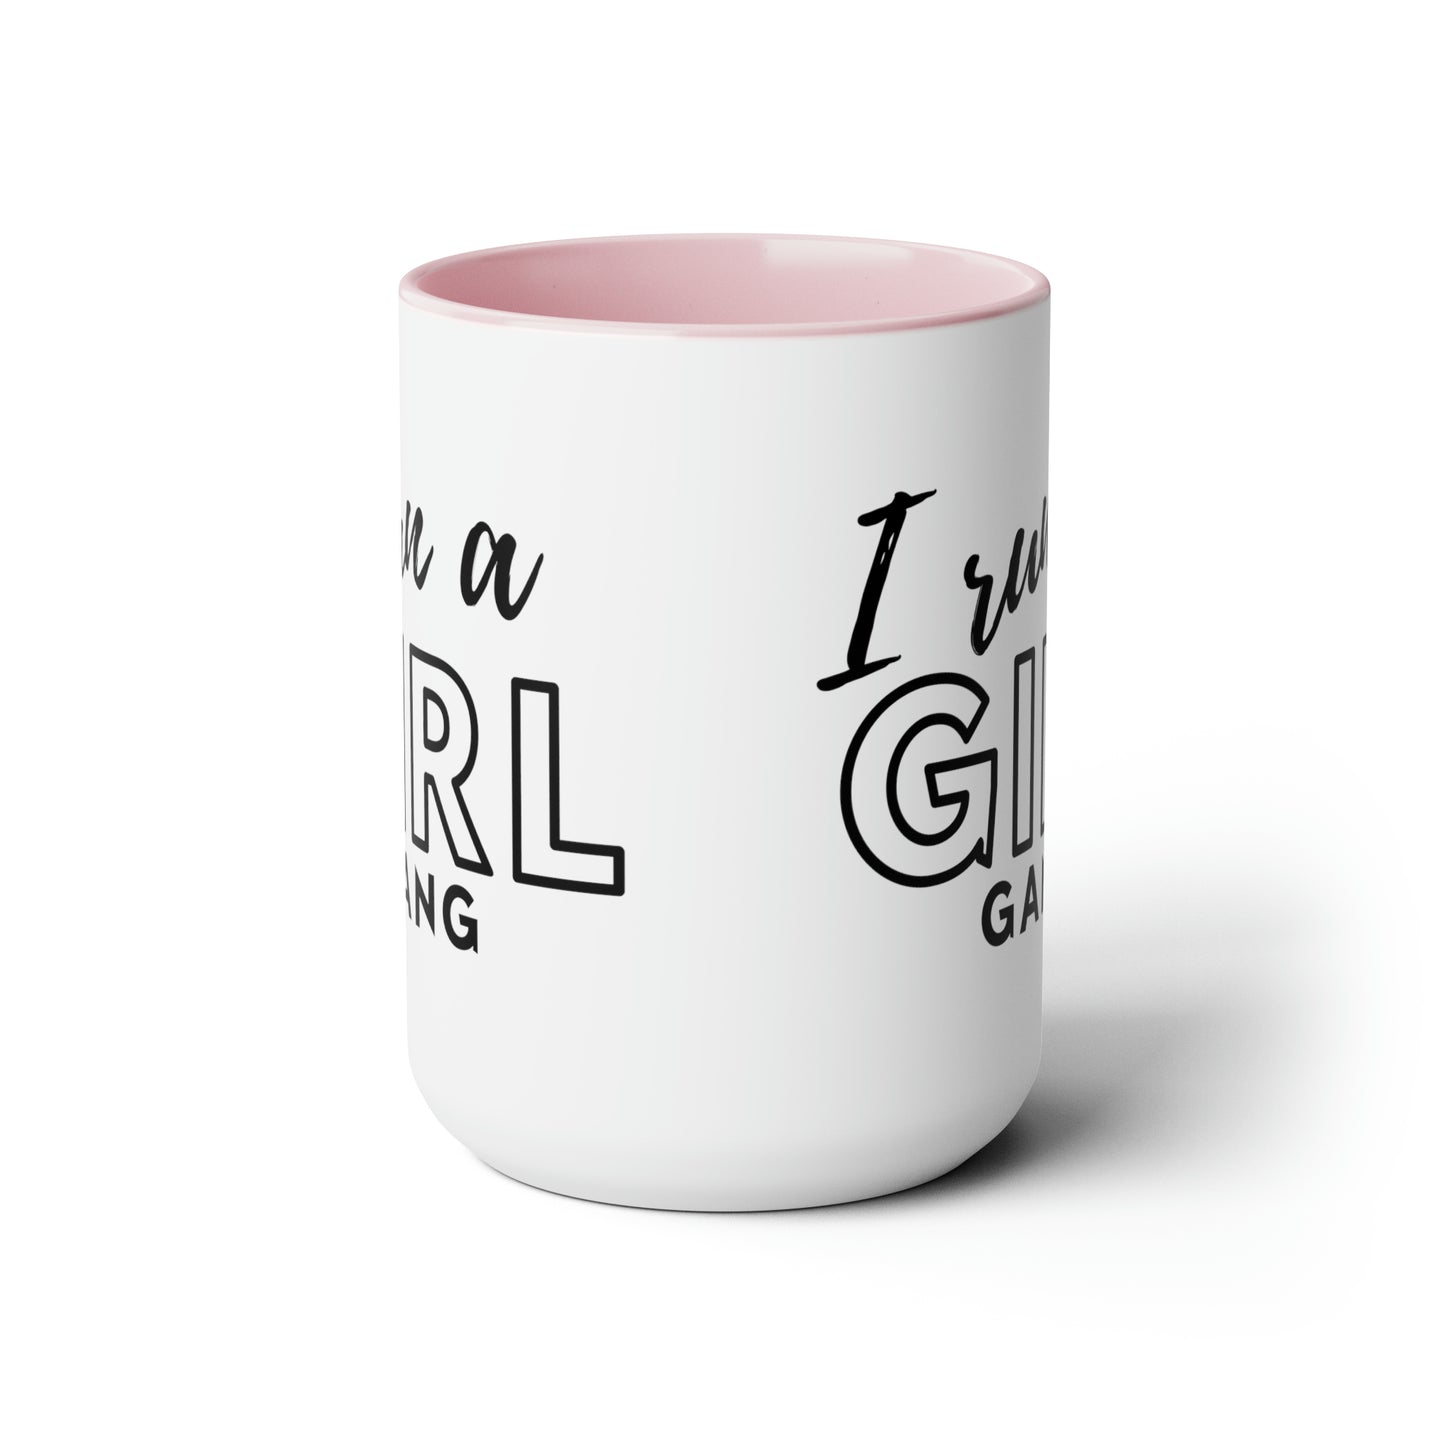 Girl Gang Two-Tone Coffee Mug, 15oz Printify Pikolelie (pee-koh-lay-lee) Activewear Mug